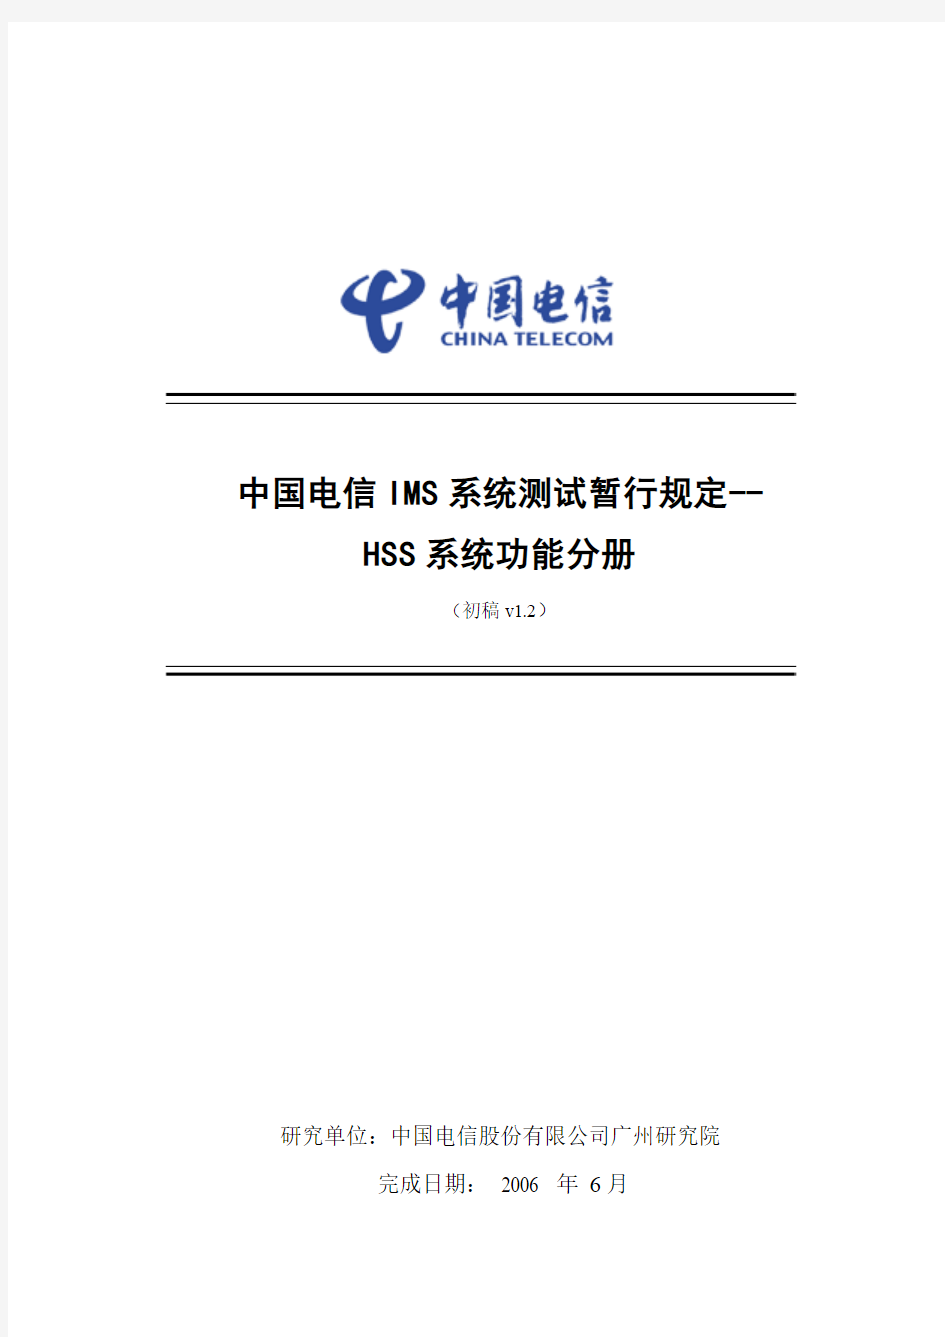 中国电信IMS系统测试暂行规定-HSS分册v1.2